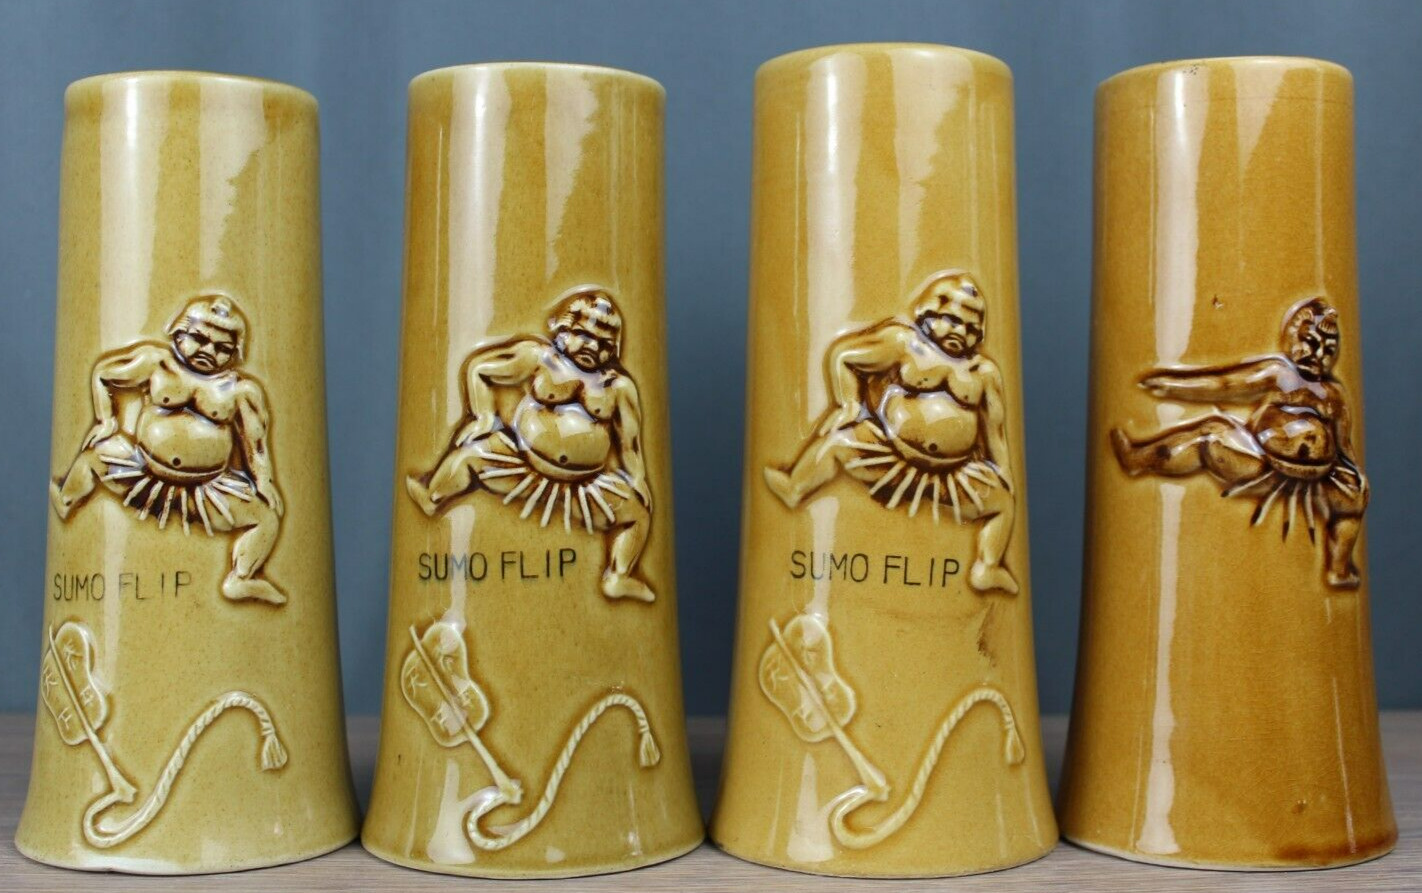 4X Sumo Flip ceramic mugs from Miyako Hotel San Francisco, Tiki Bar,